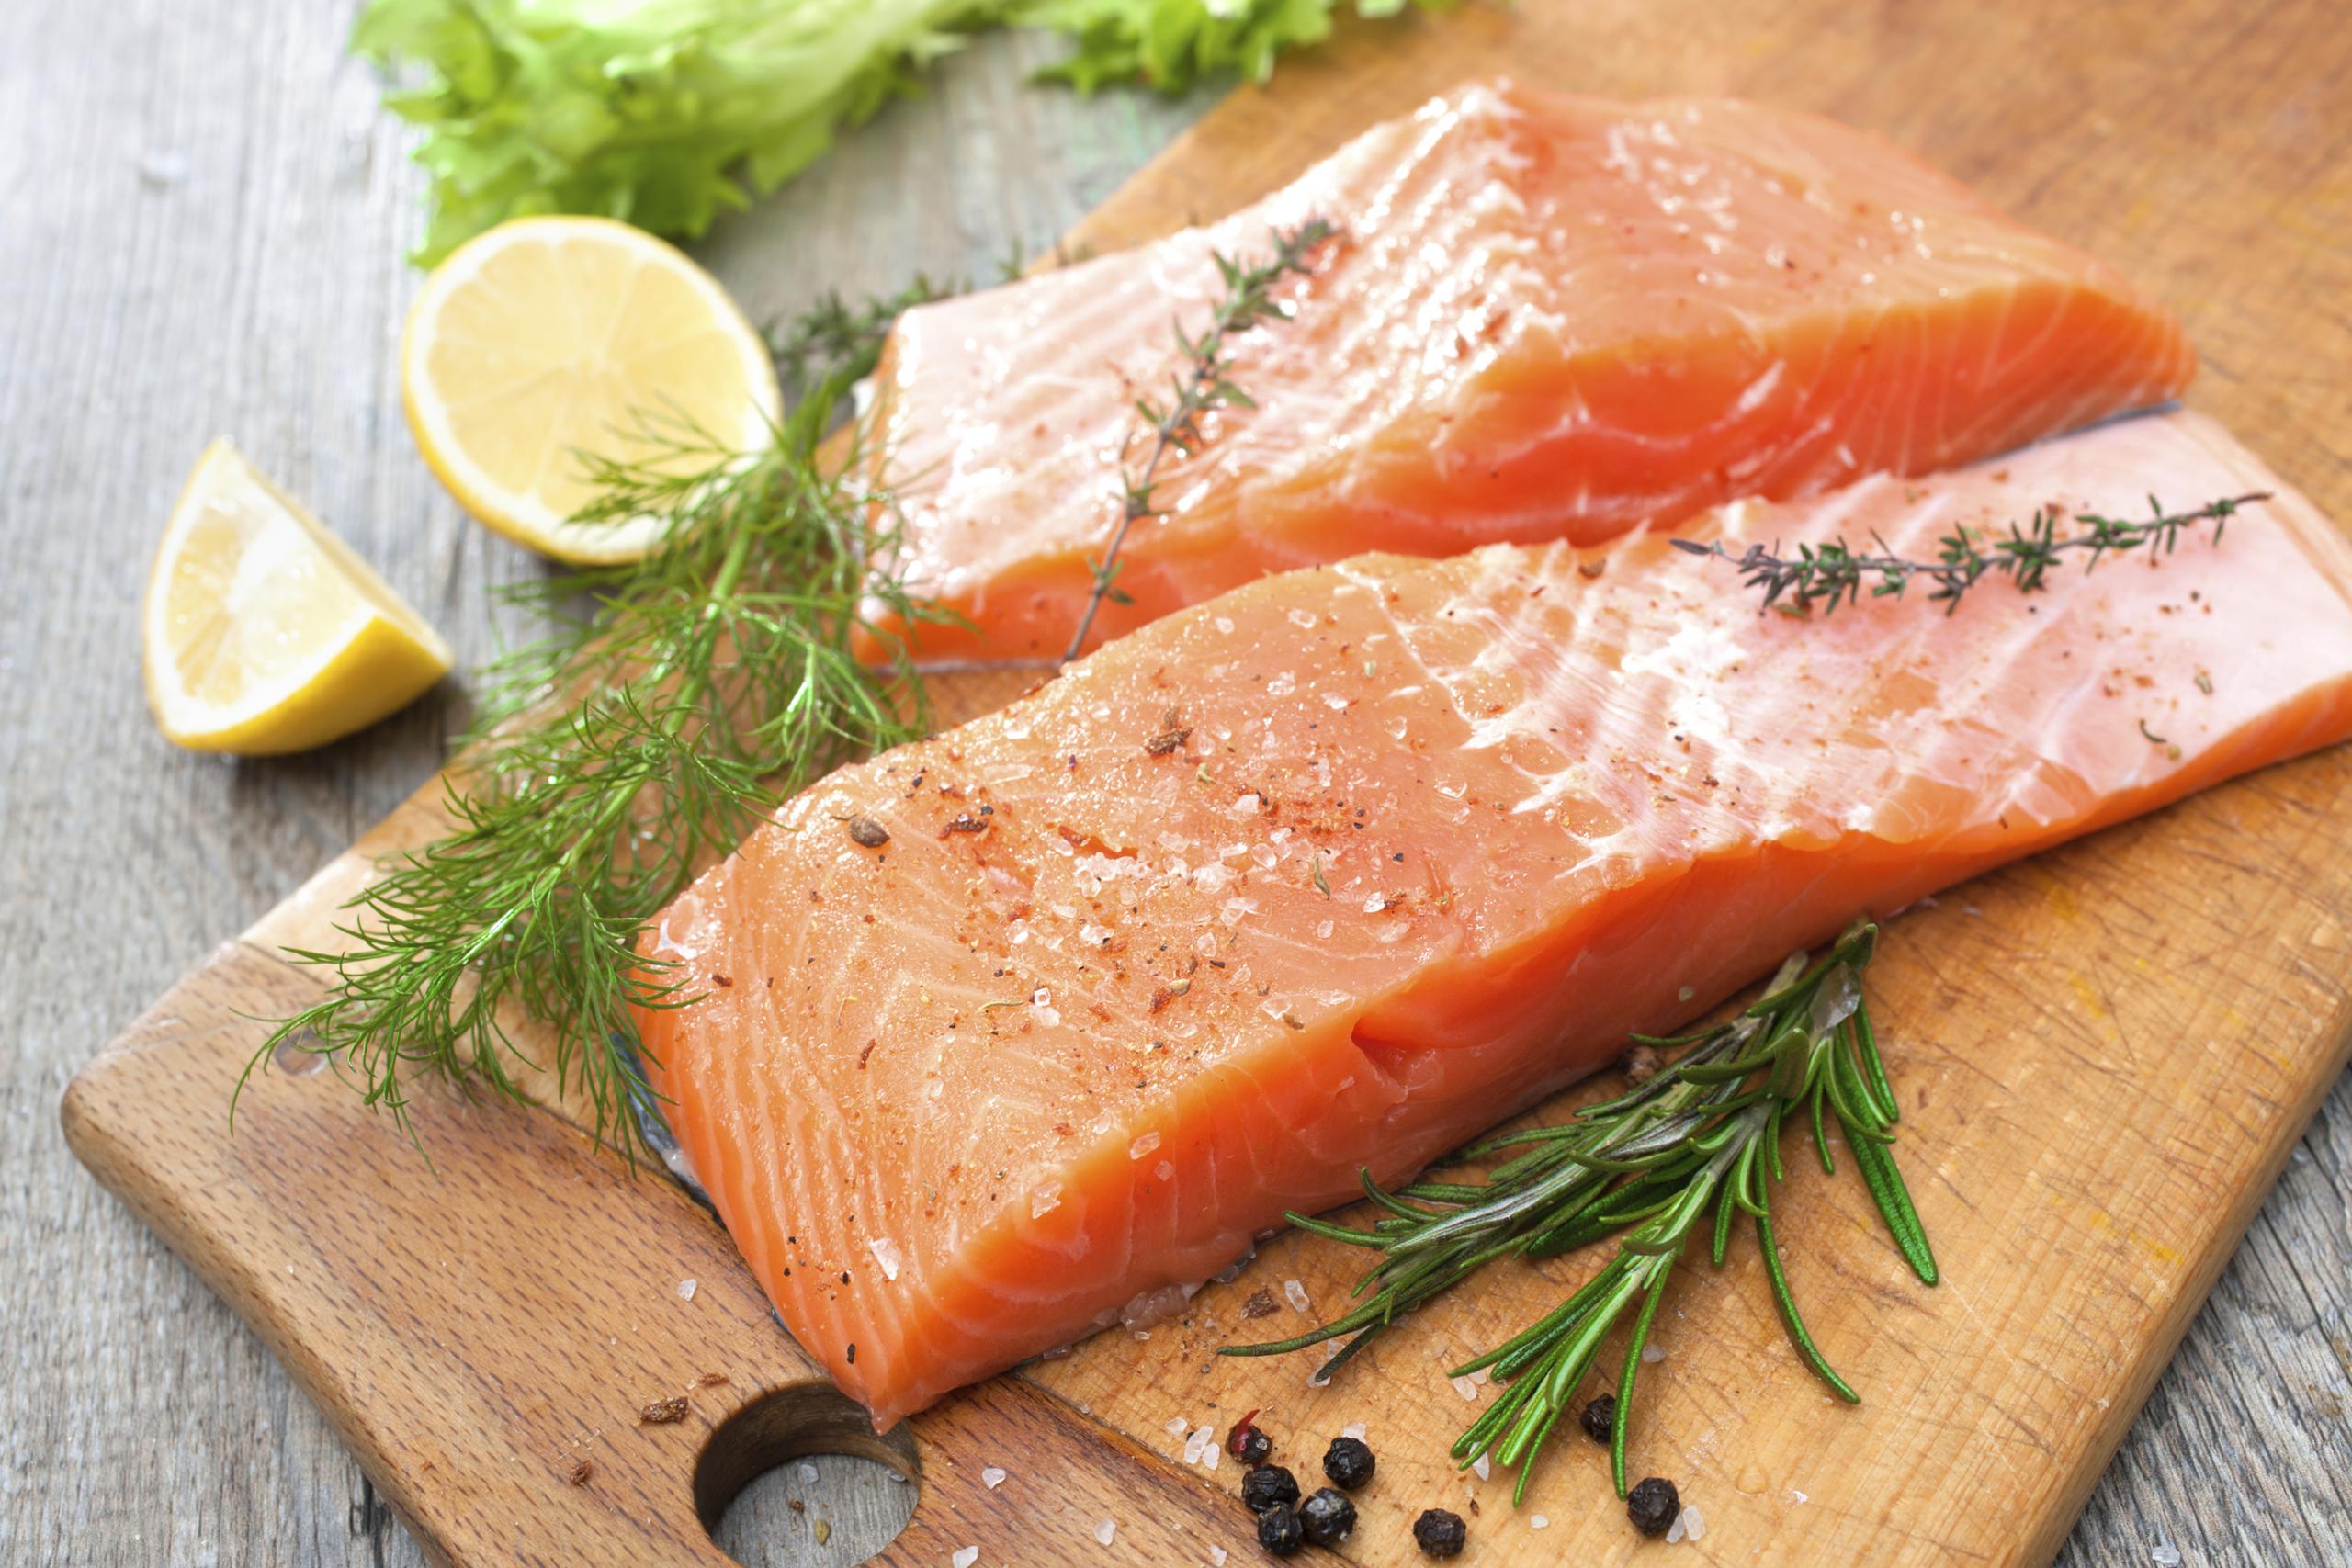 El pescado es bien versátil, bajo en calorías, fácil de cocinar y digerir.